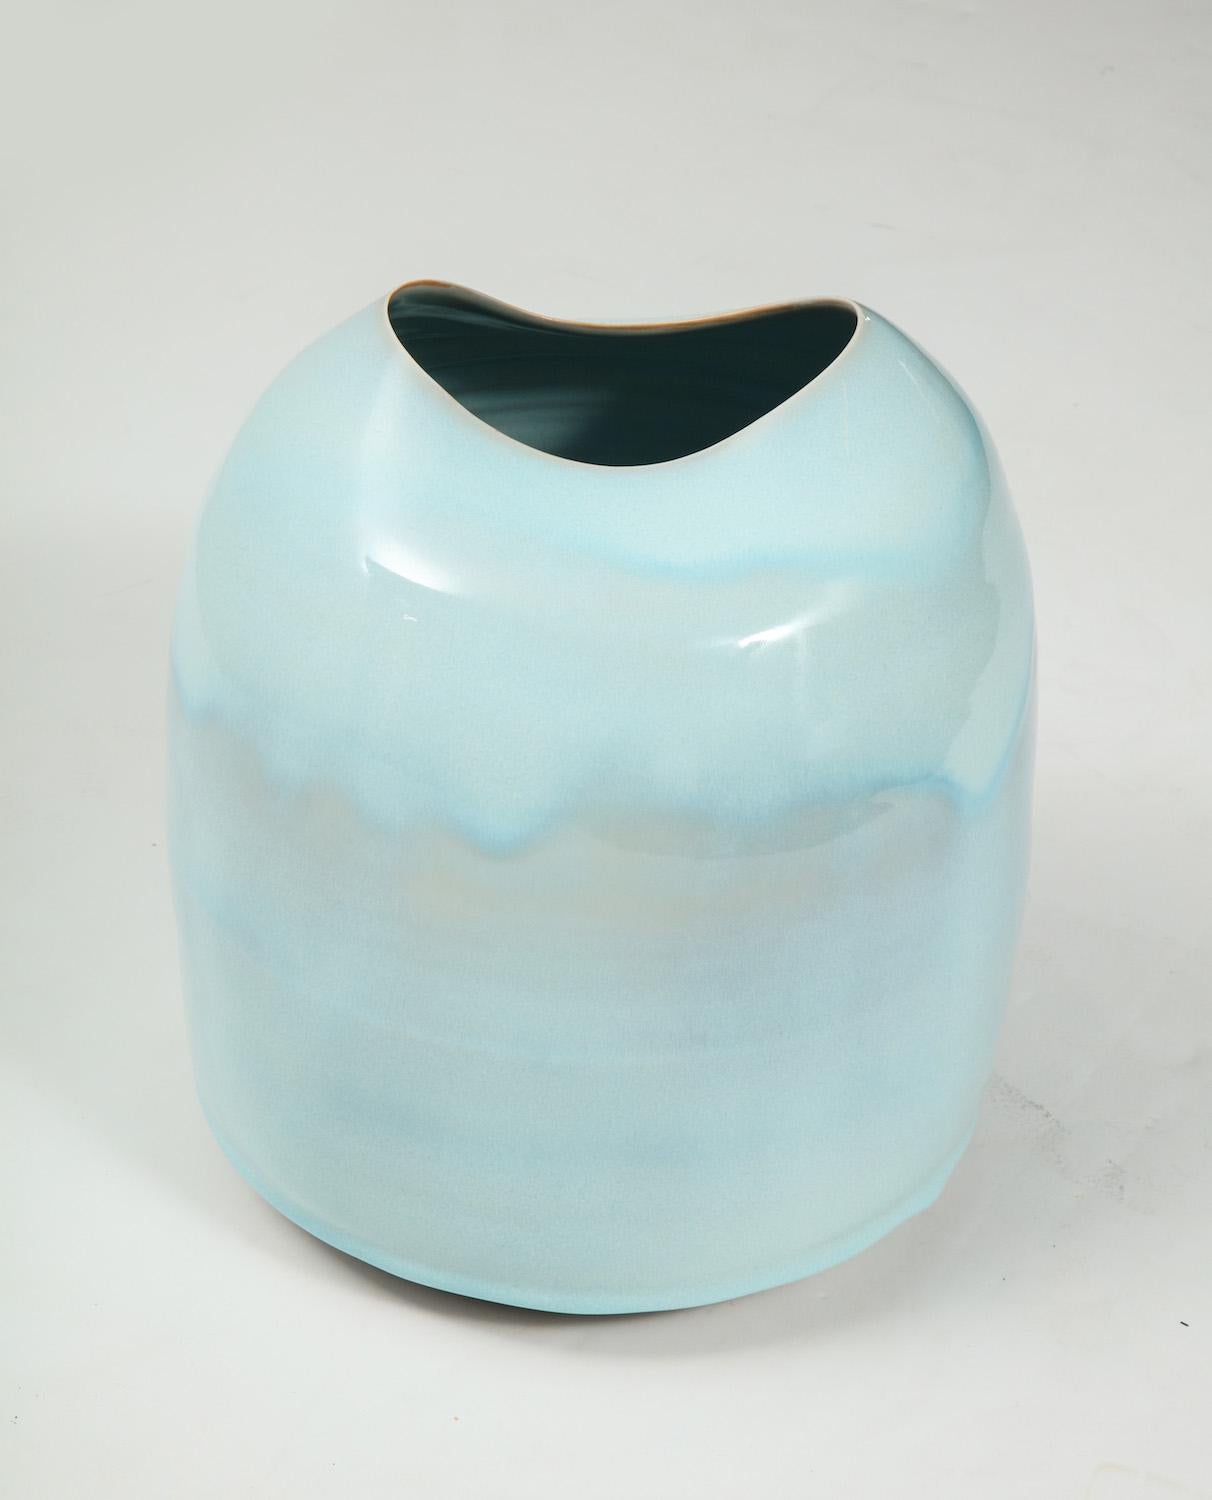 English Studio-Made Porcelain Vase by Tonya Gomez